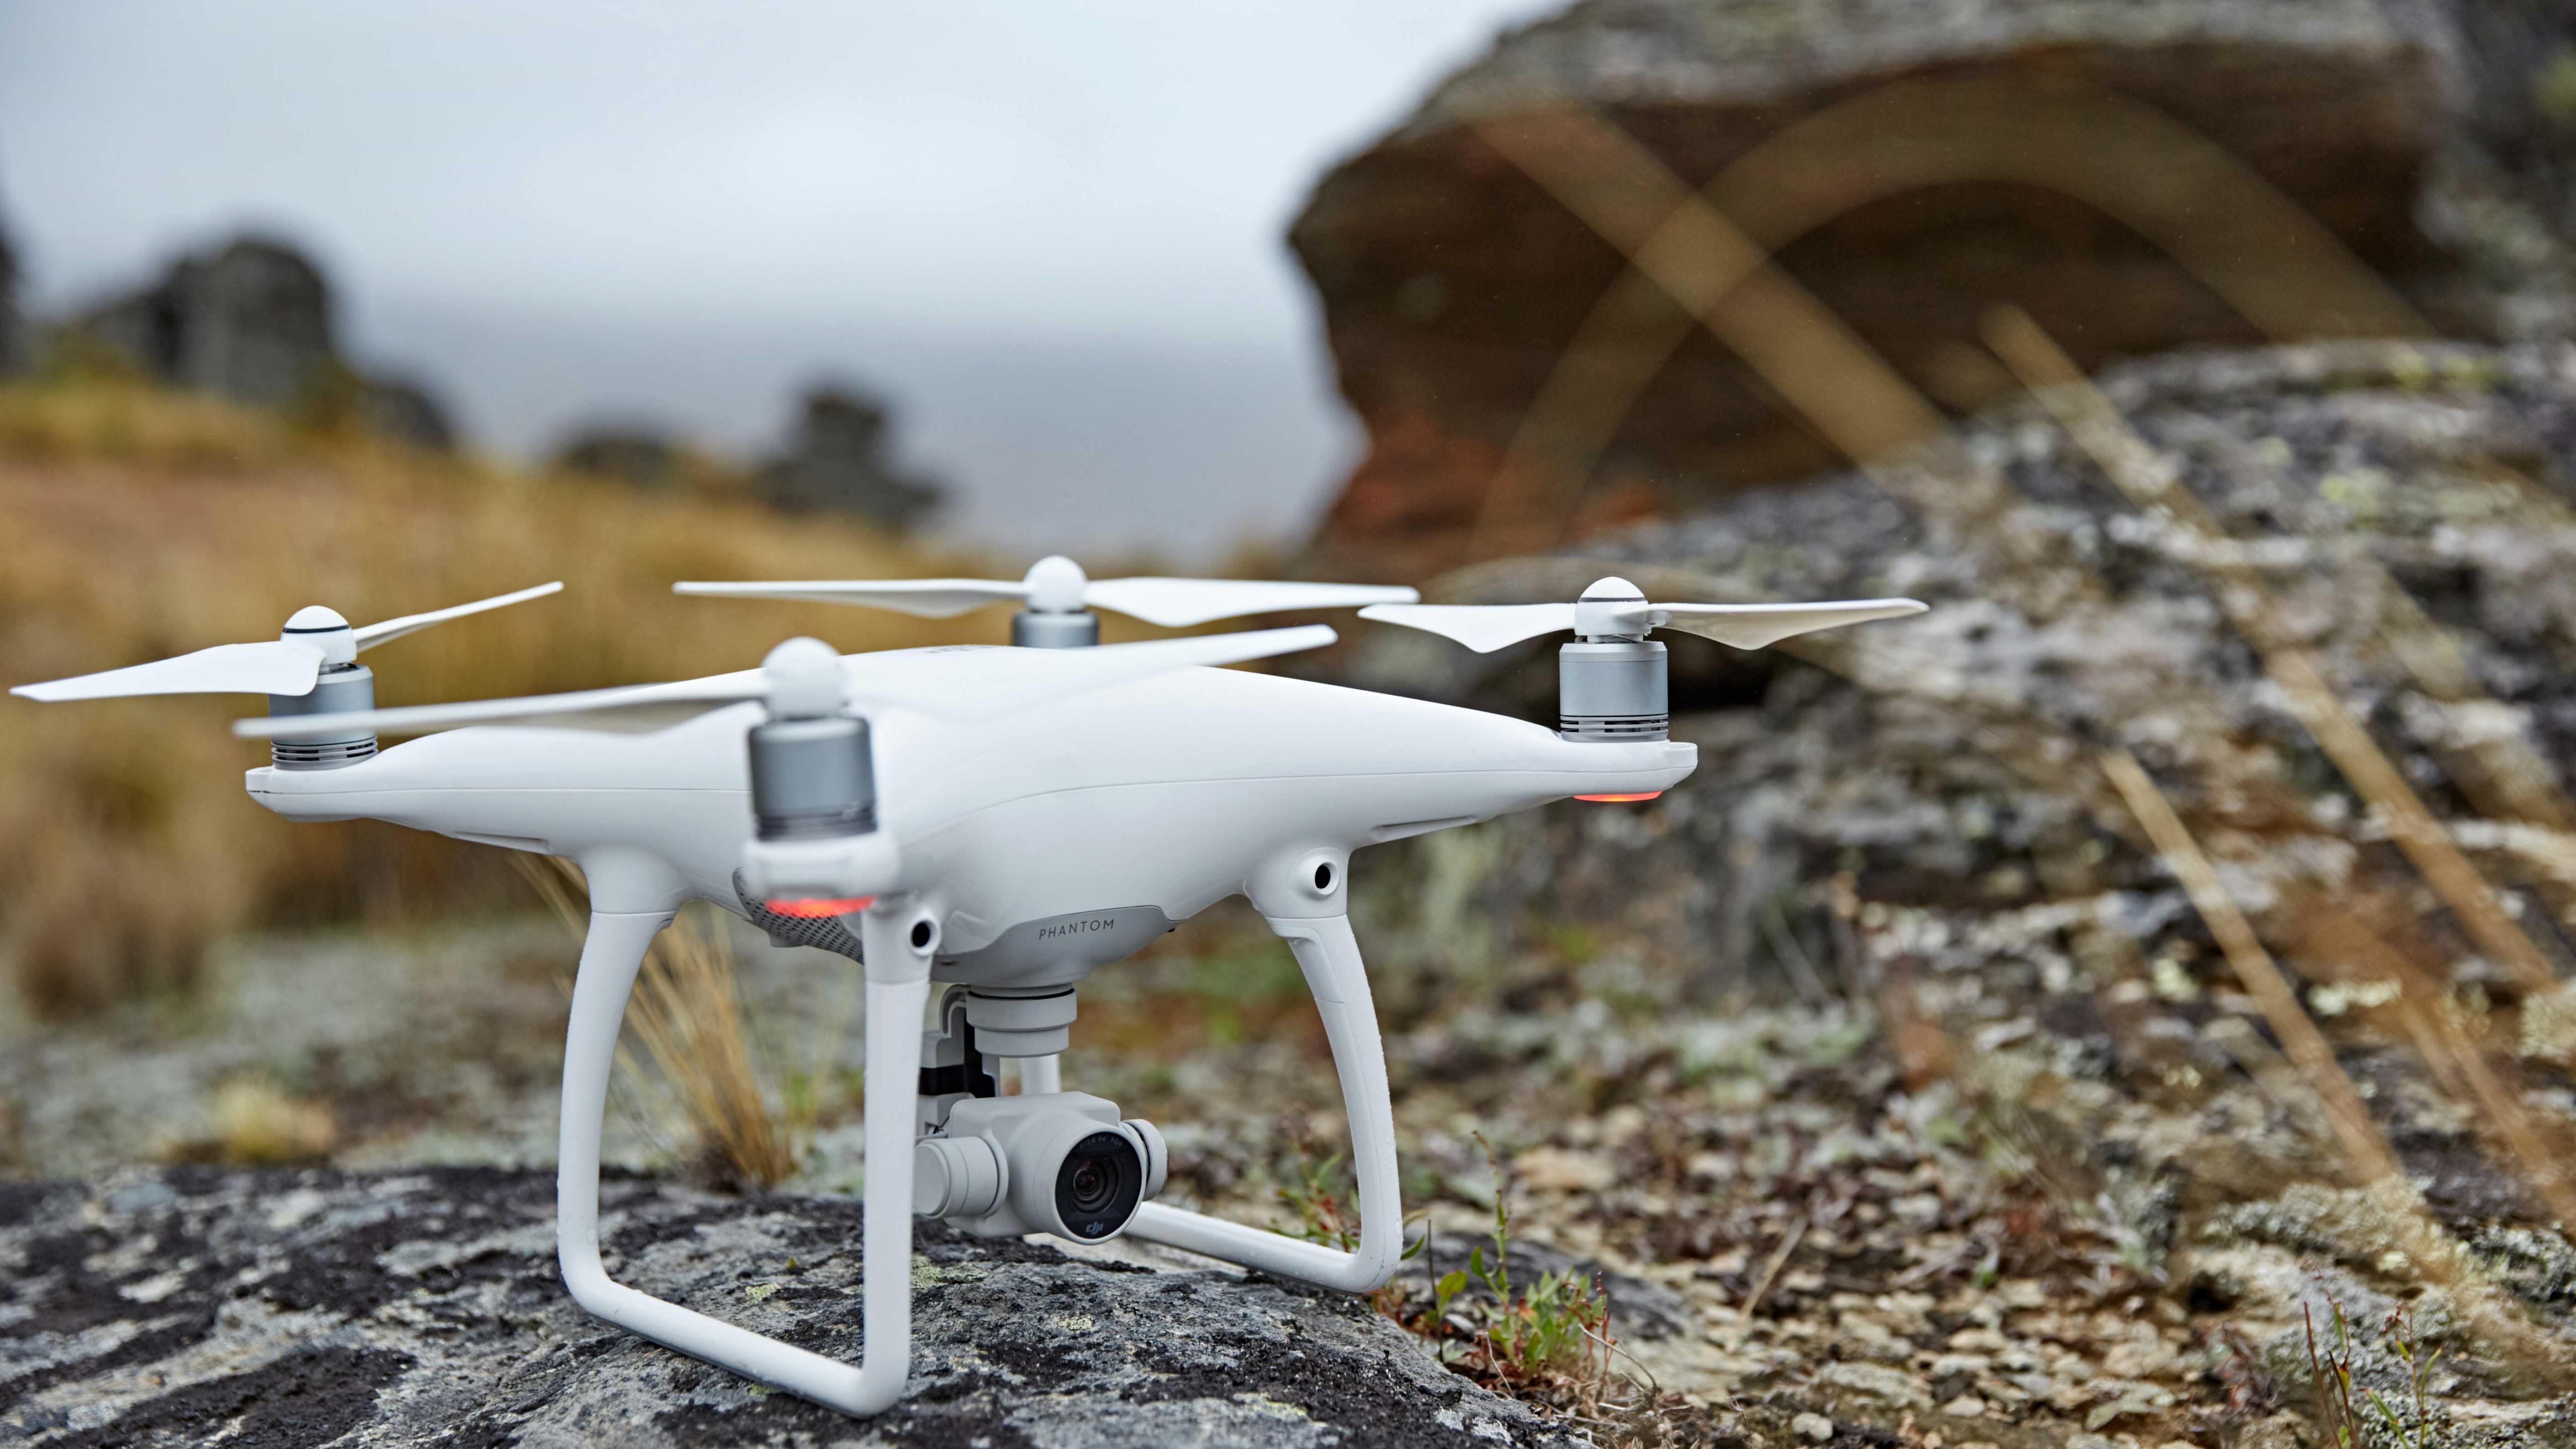 Wallpaper DJI Phantom Drone, Quadcopter, Phantom, Review, Test, Hi Tech